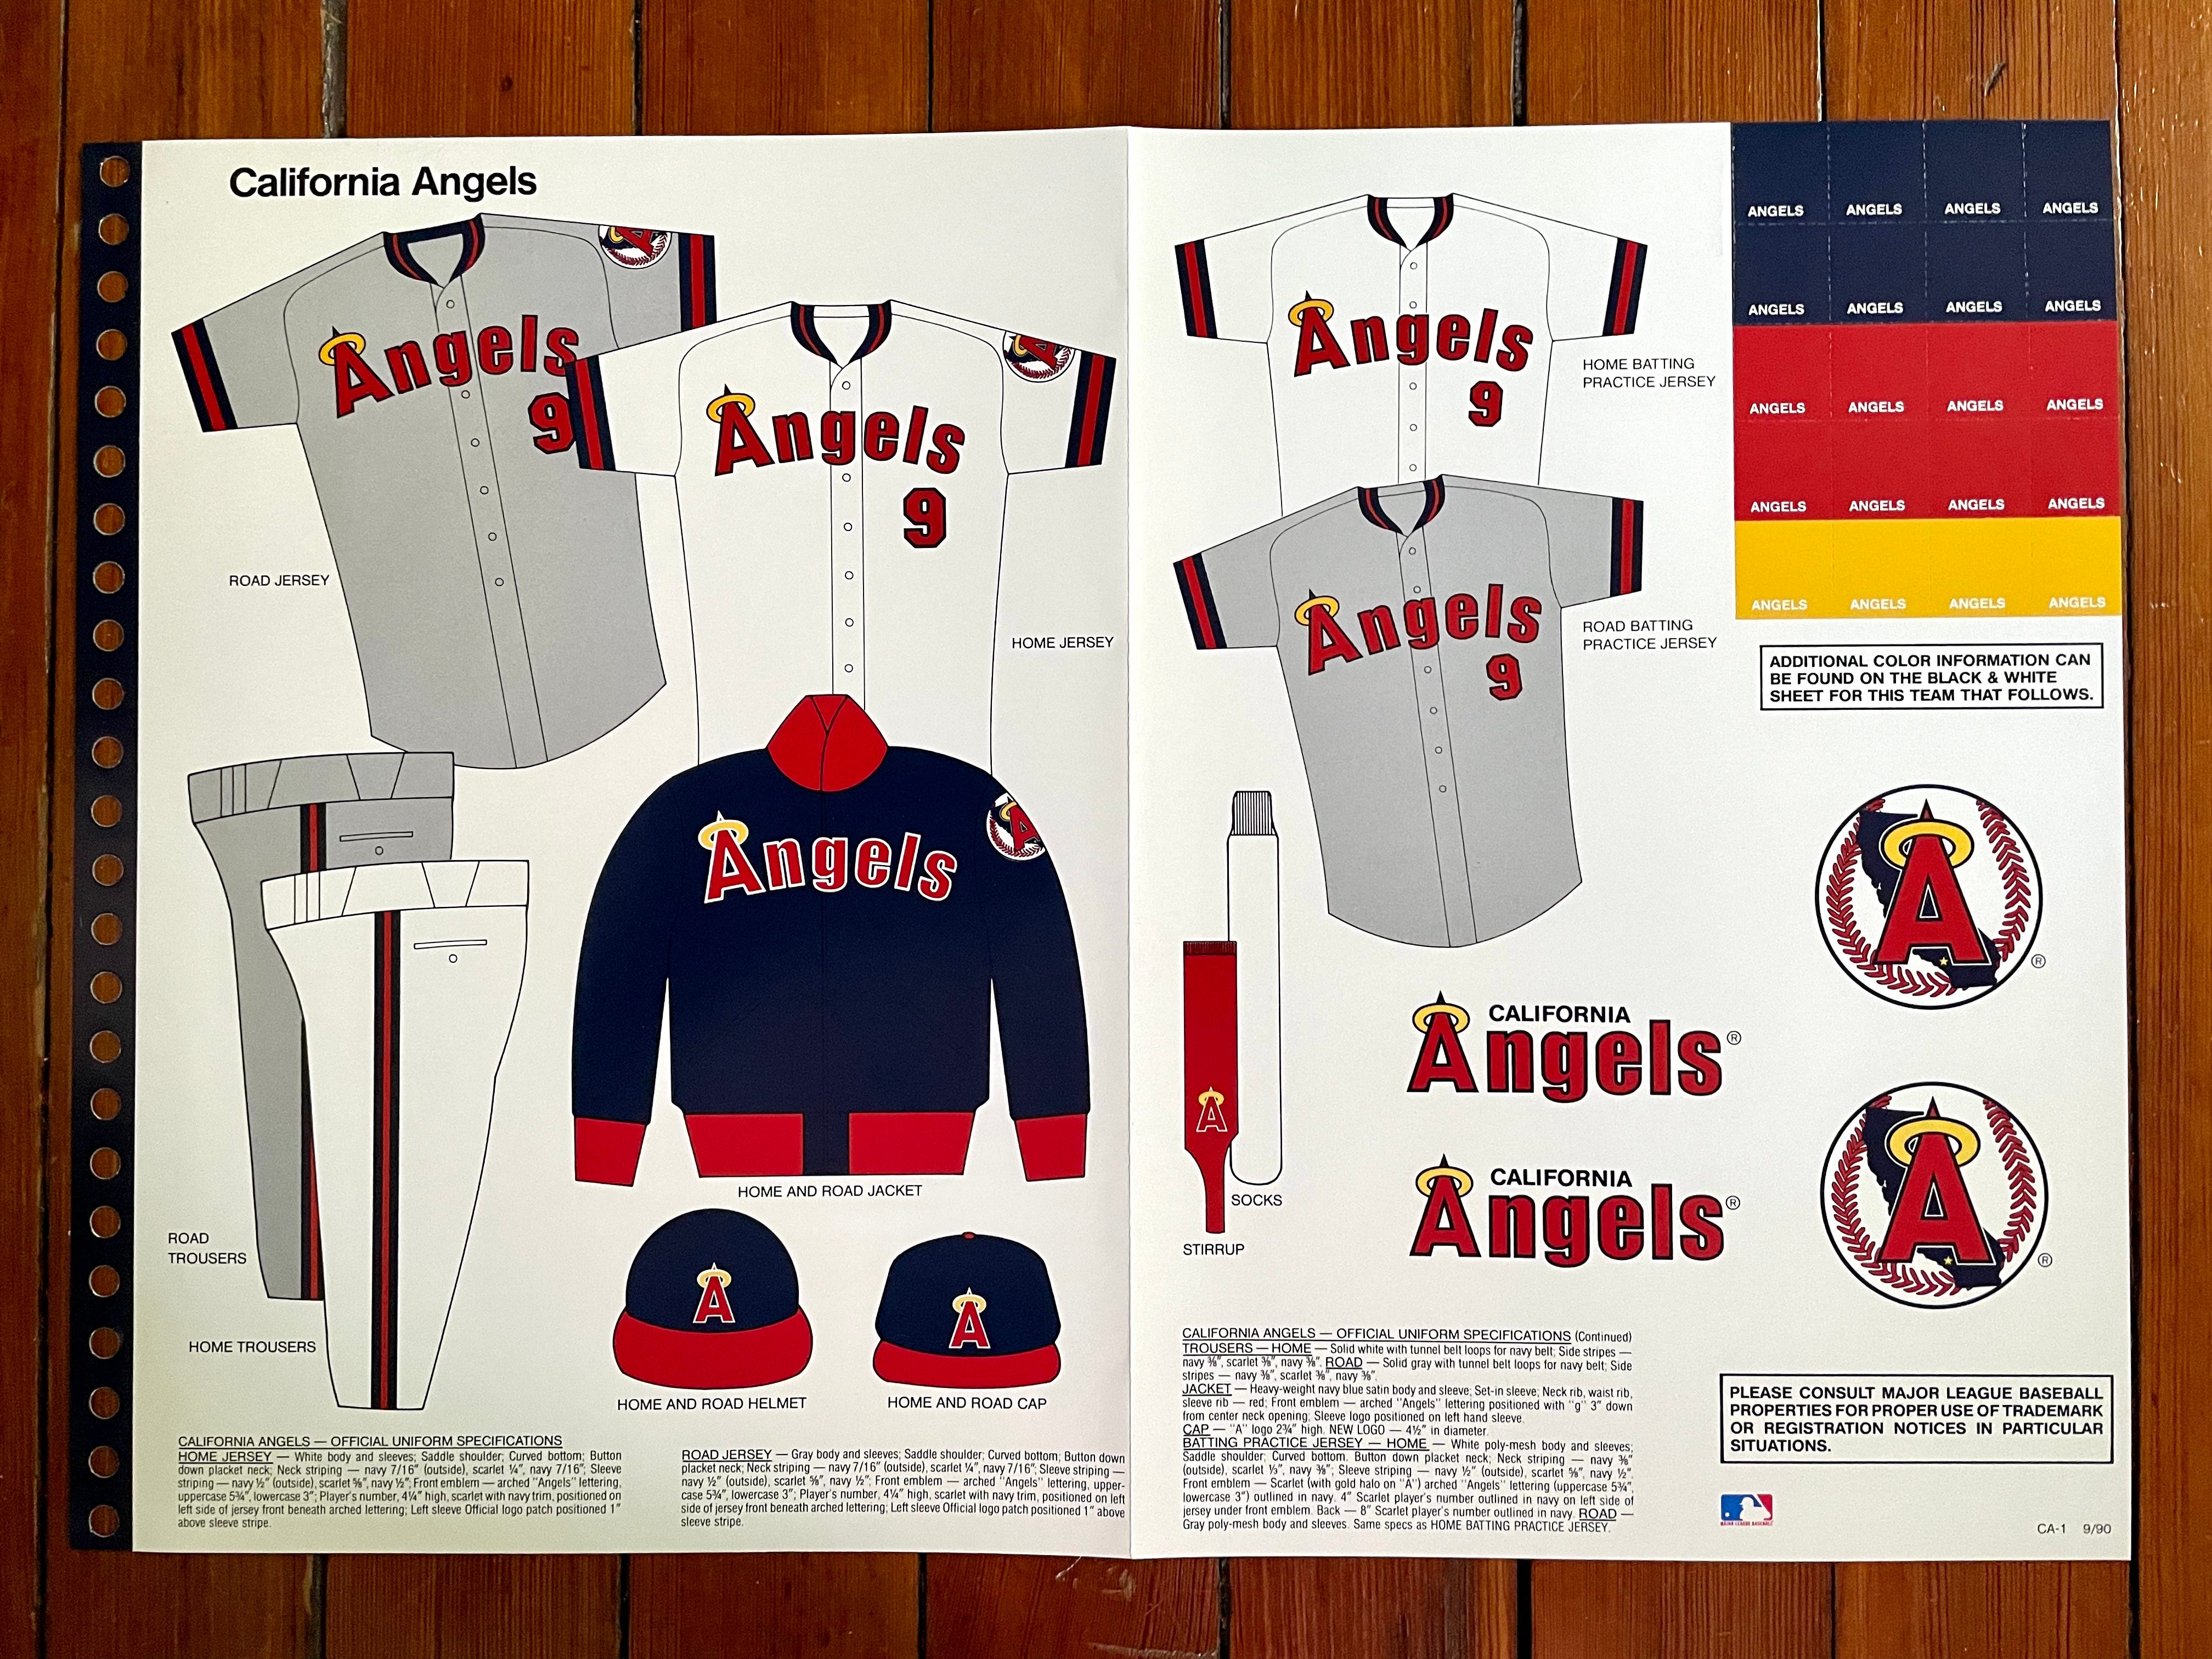 Glorydays Fine Goods Vintage Atlanta Braves T-Shirt MLB Big Logo 1992